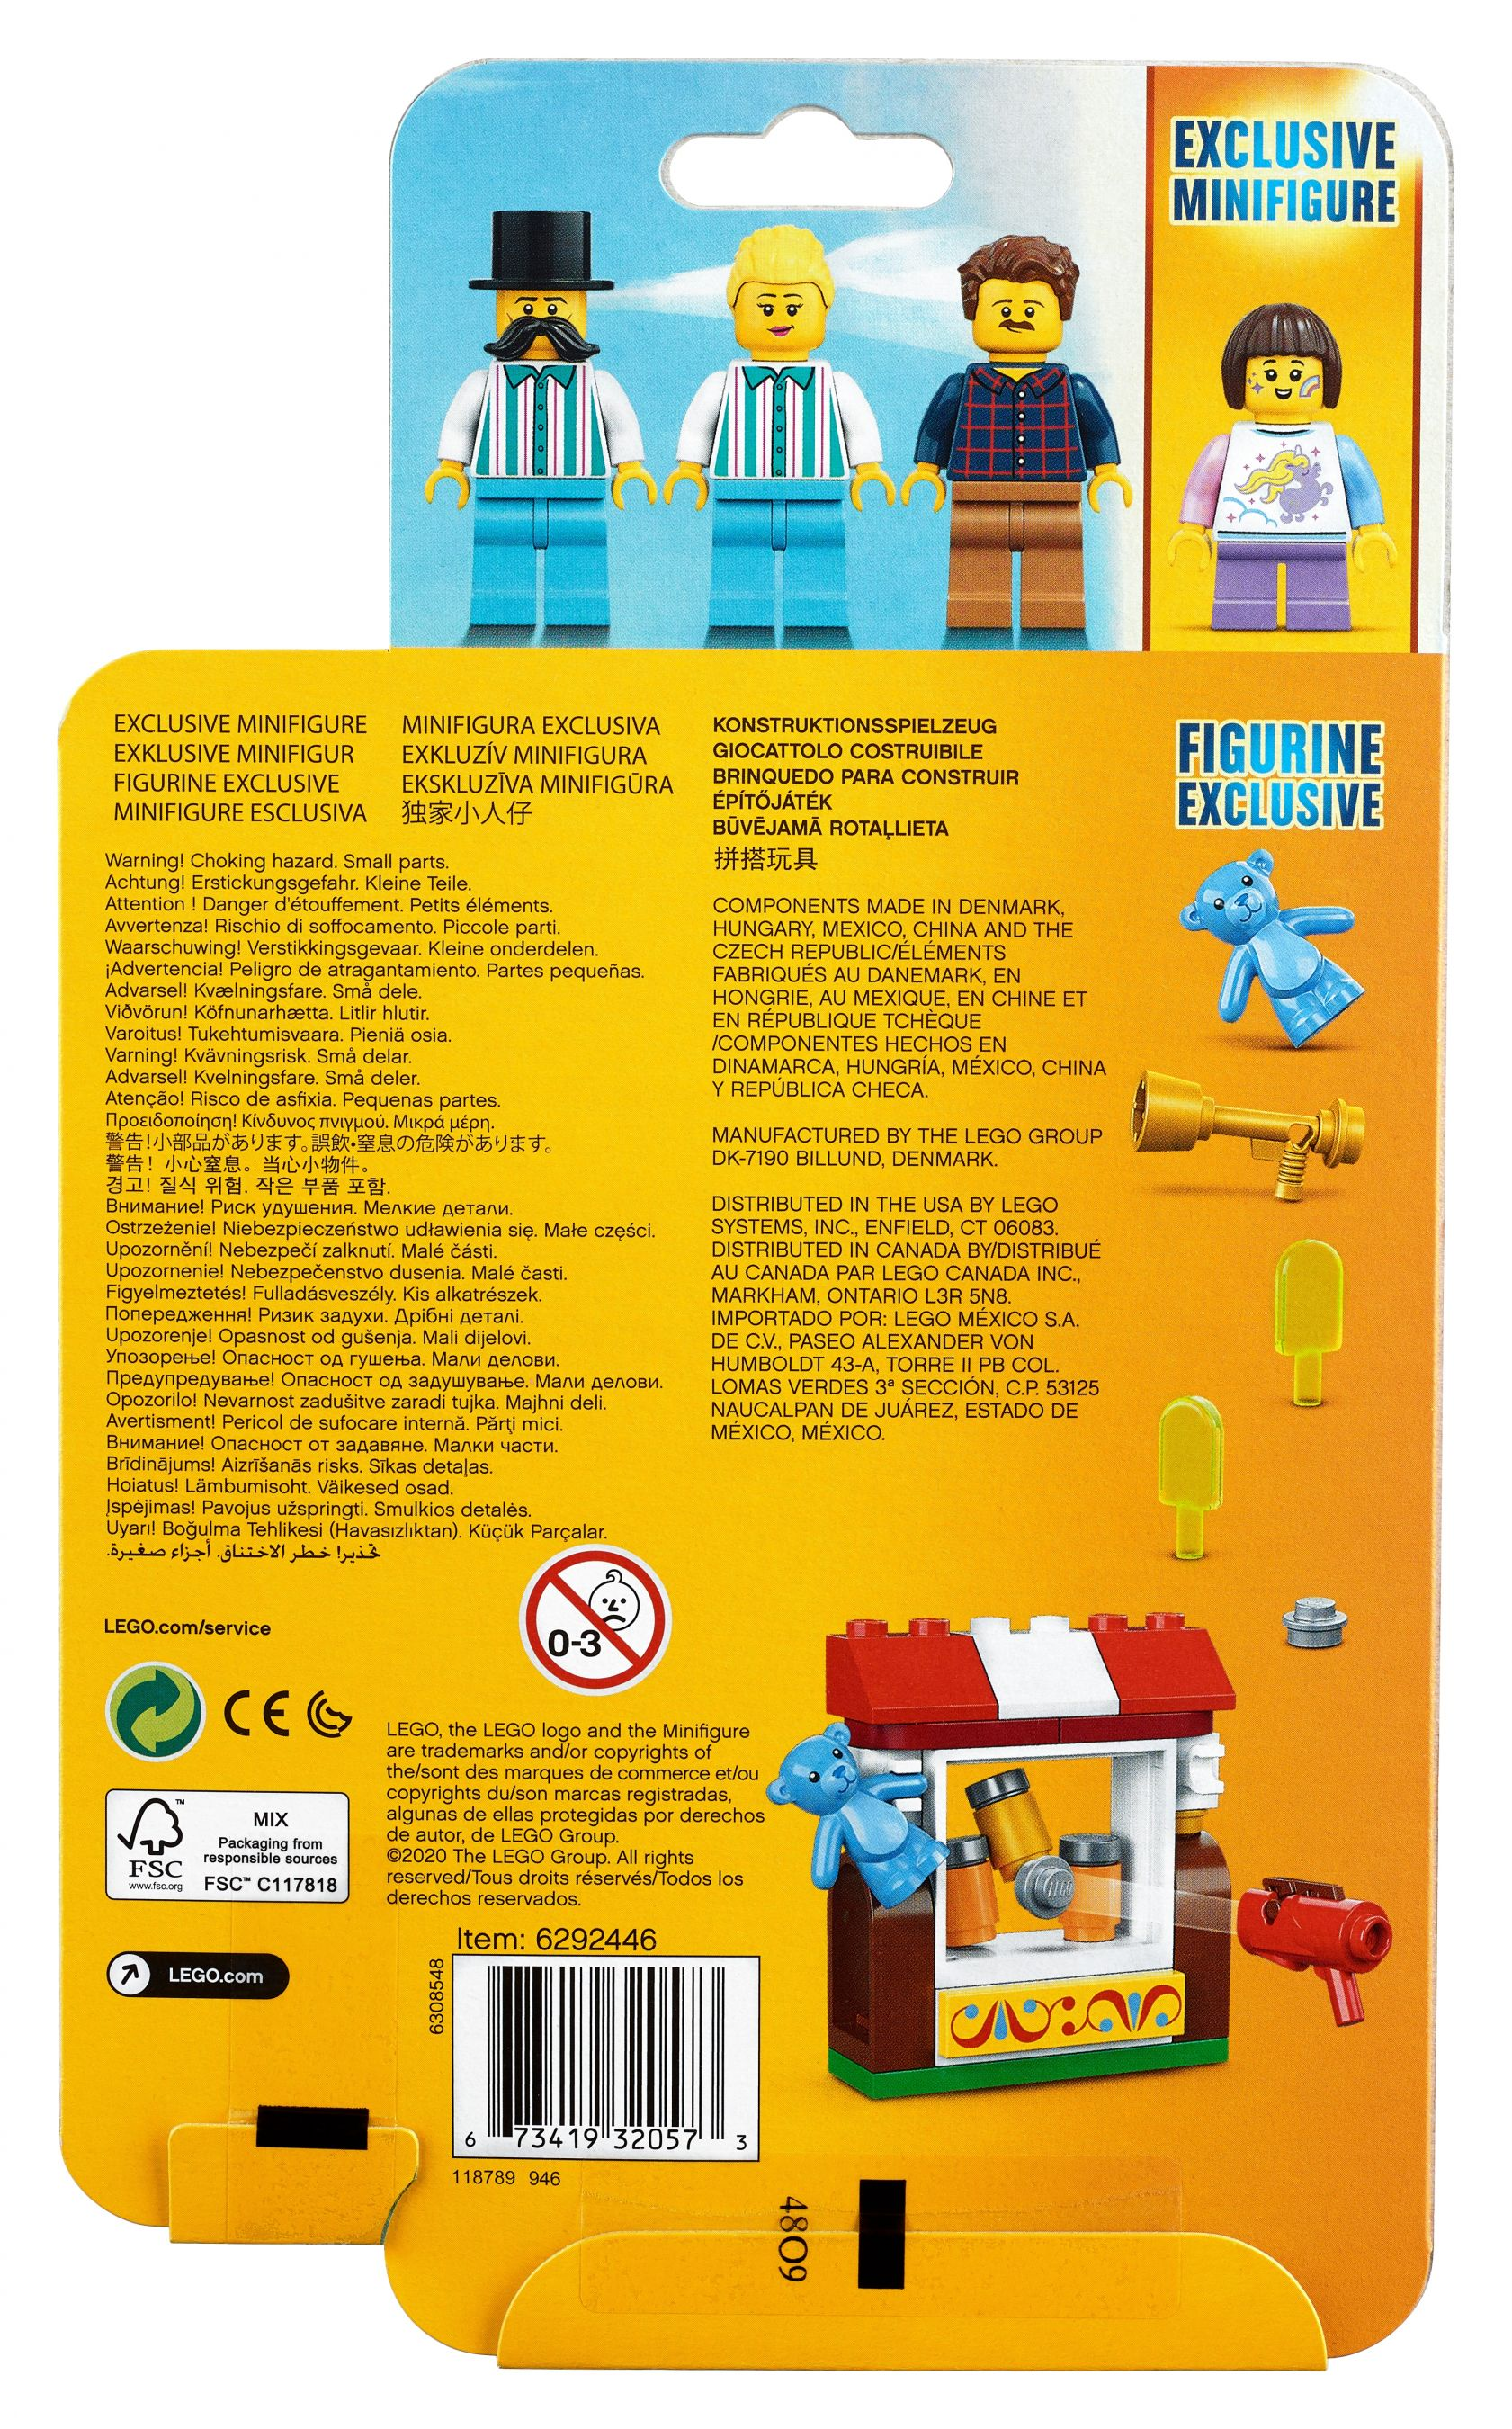 40373 LEGO LEGO® Bausatz Jahrmarkt-Minifiguren-Zubehörset